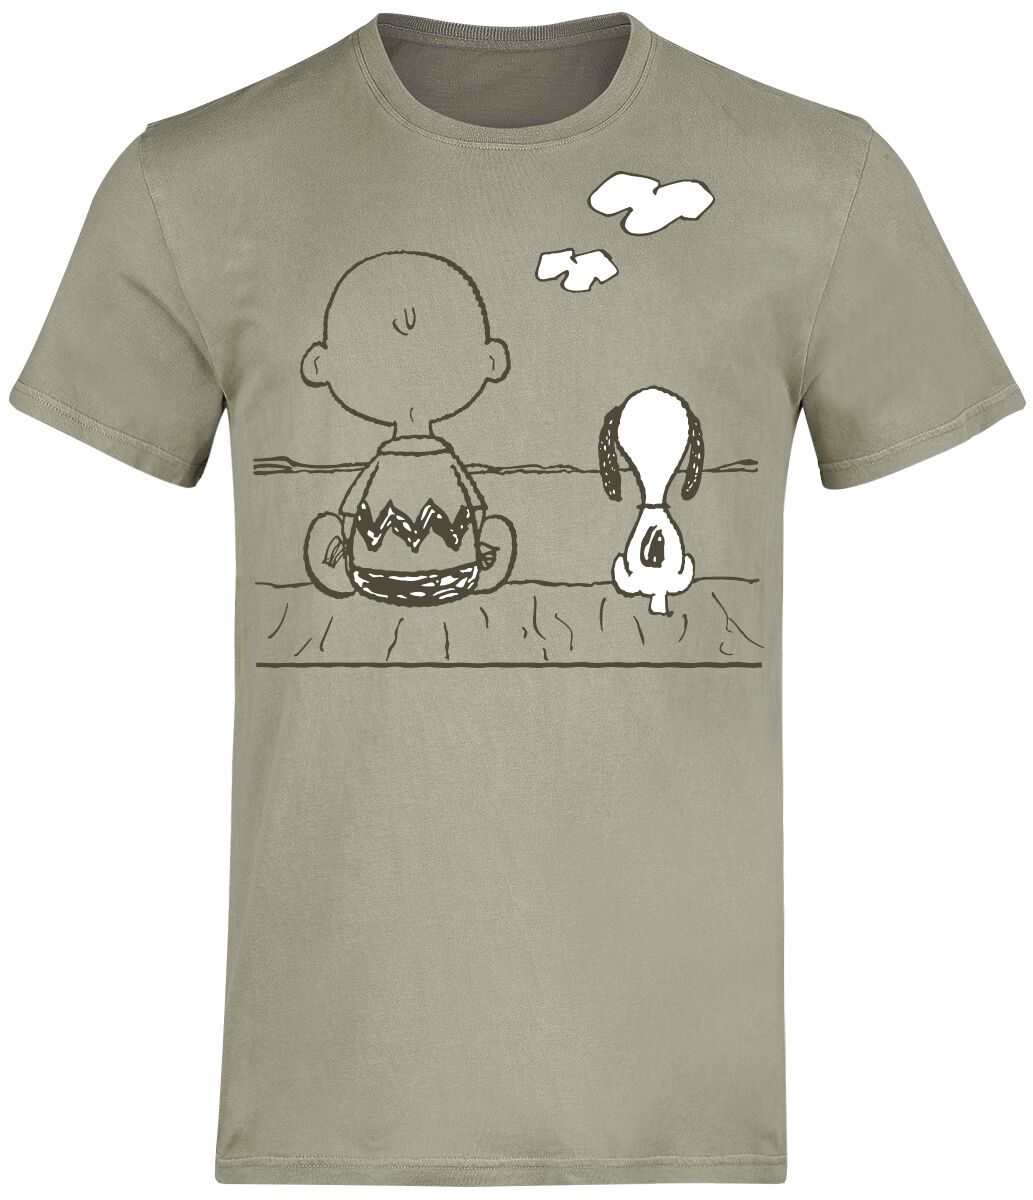 Peanuts T-Shirt - Charlie Brown und Snoopy - S bis 3XL - für Männer - Größe M - grün  - EMP exklusives Merchandise!